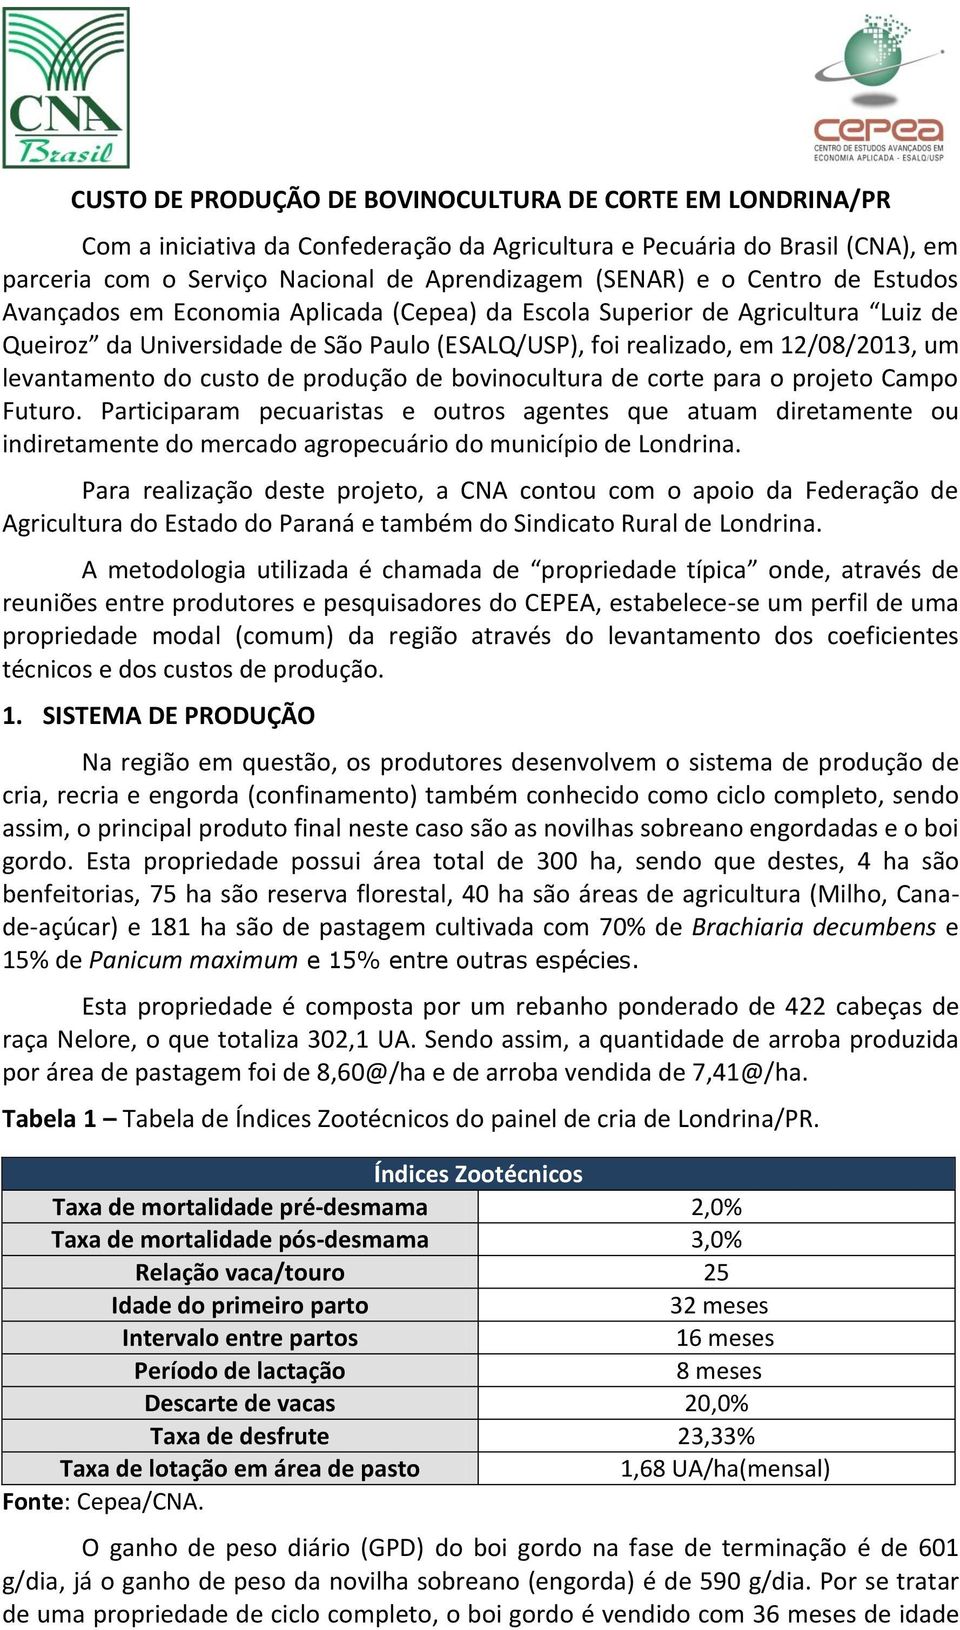 custo de produção de bovinocultura de corte para o projeto Campo Futuro.